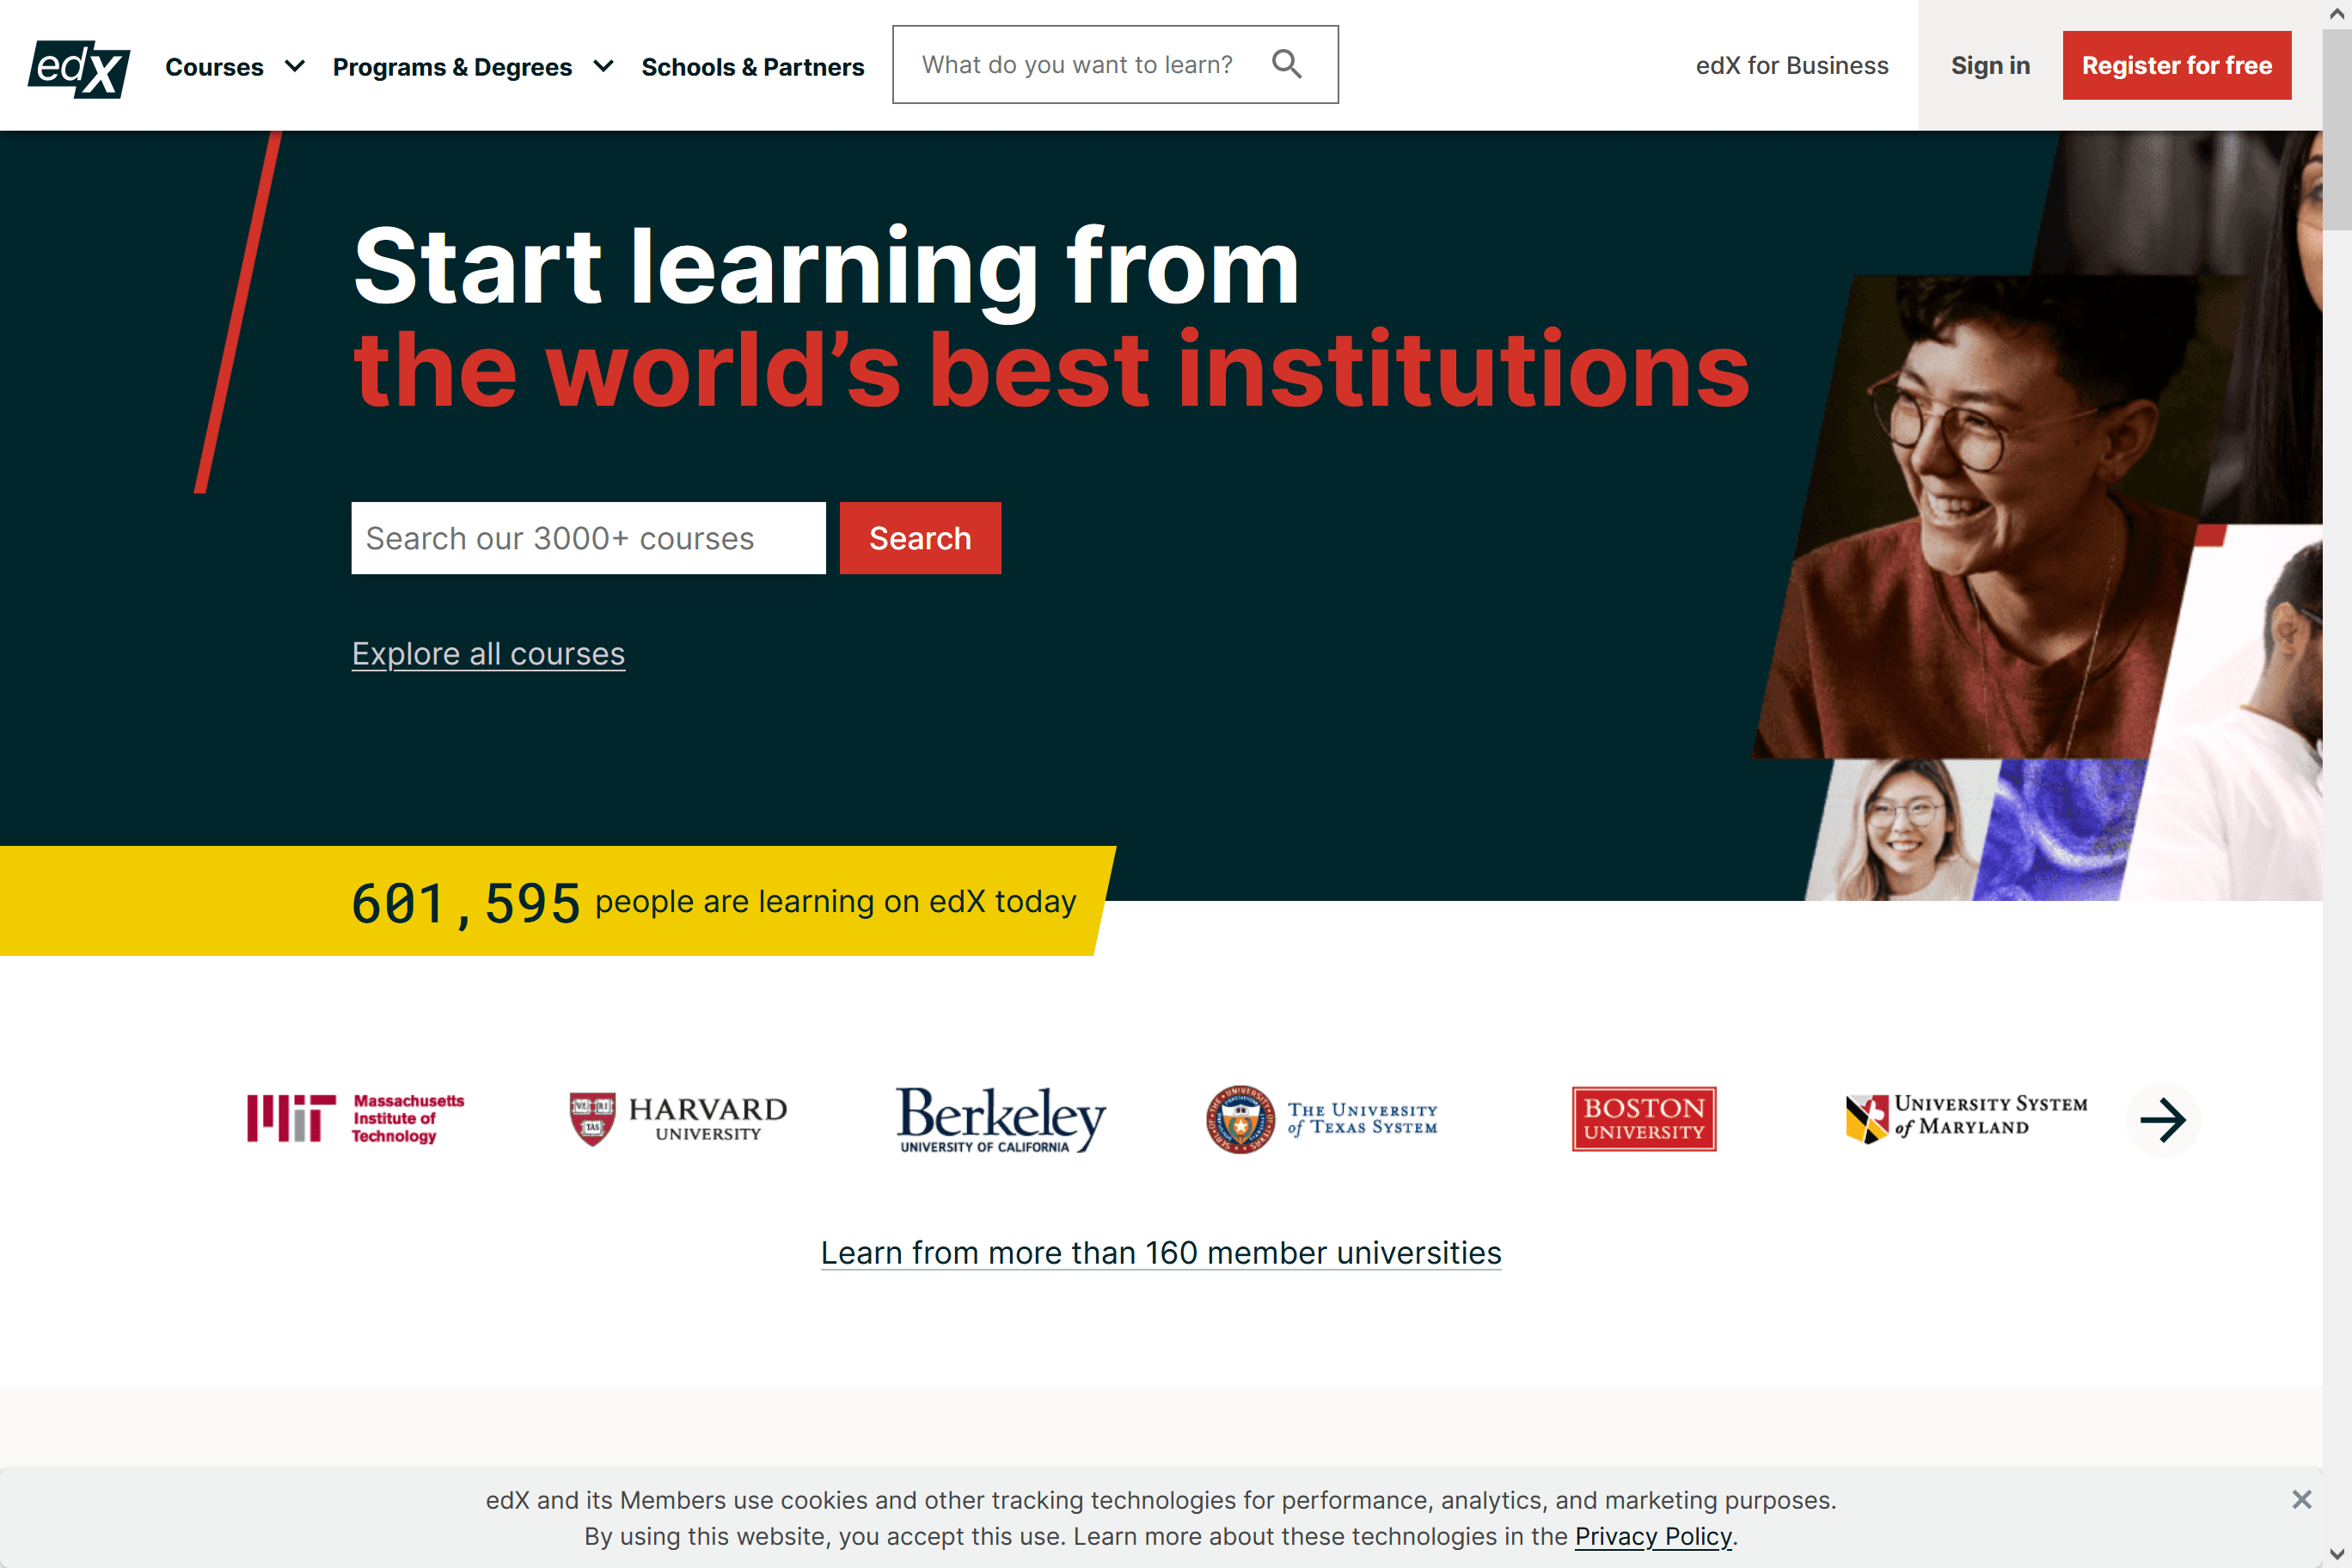 screenshot of edex online learning platform